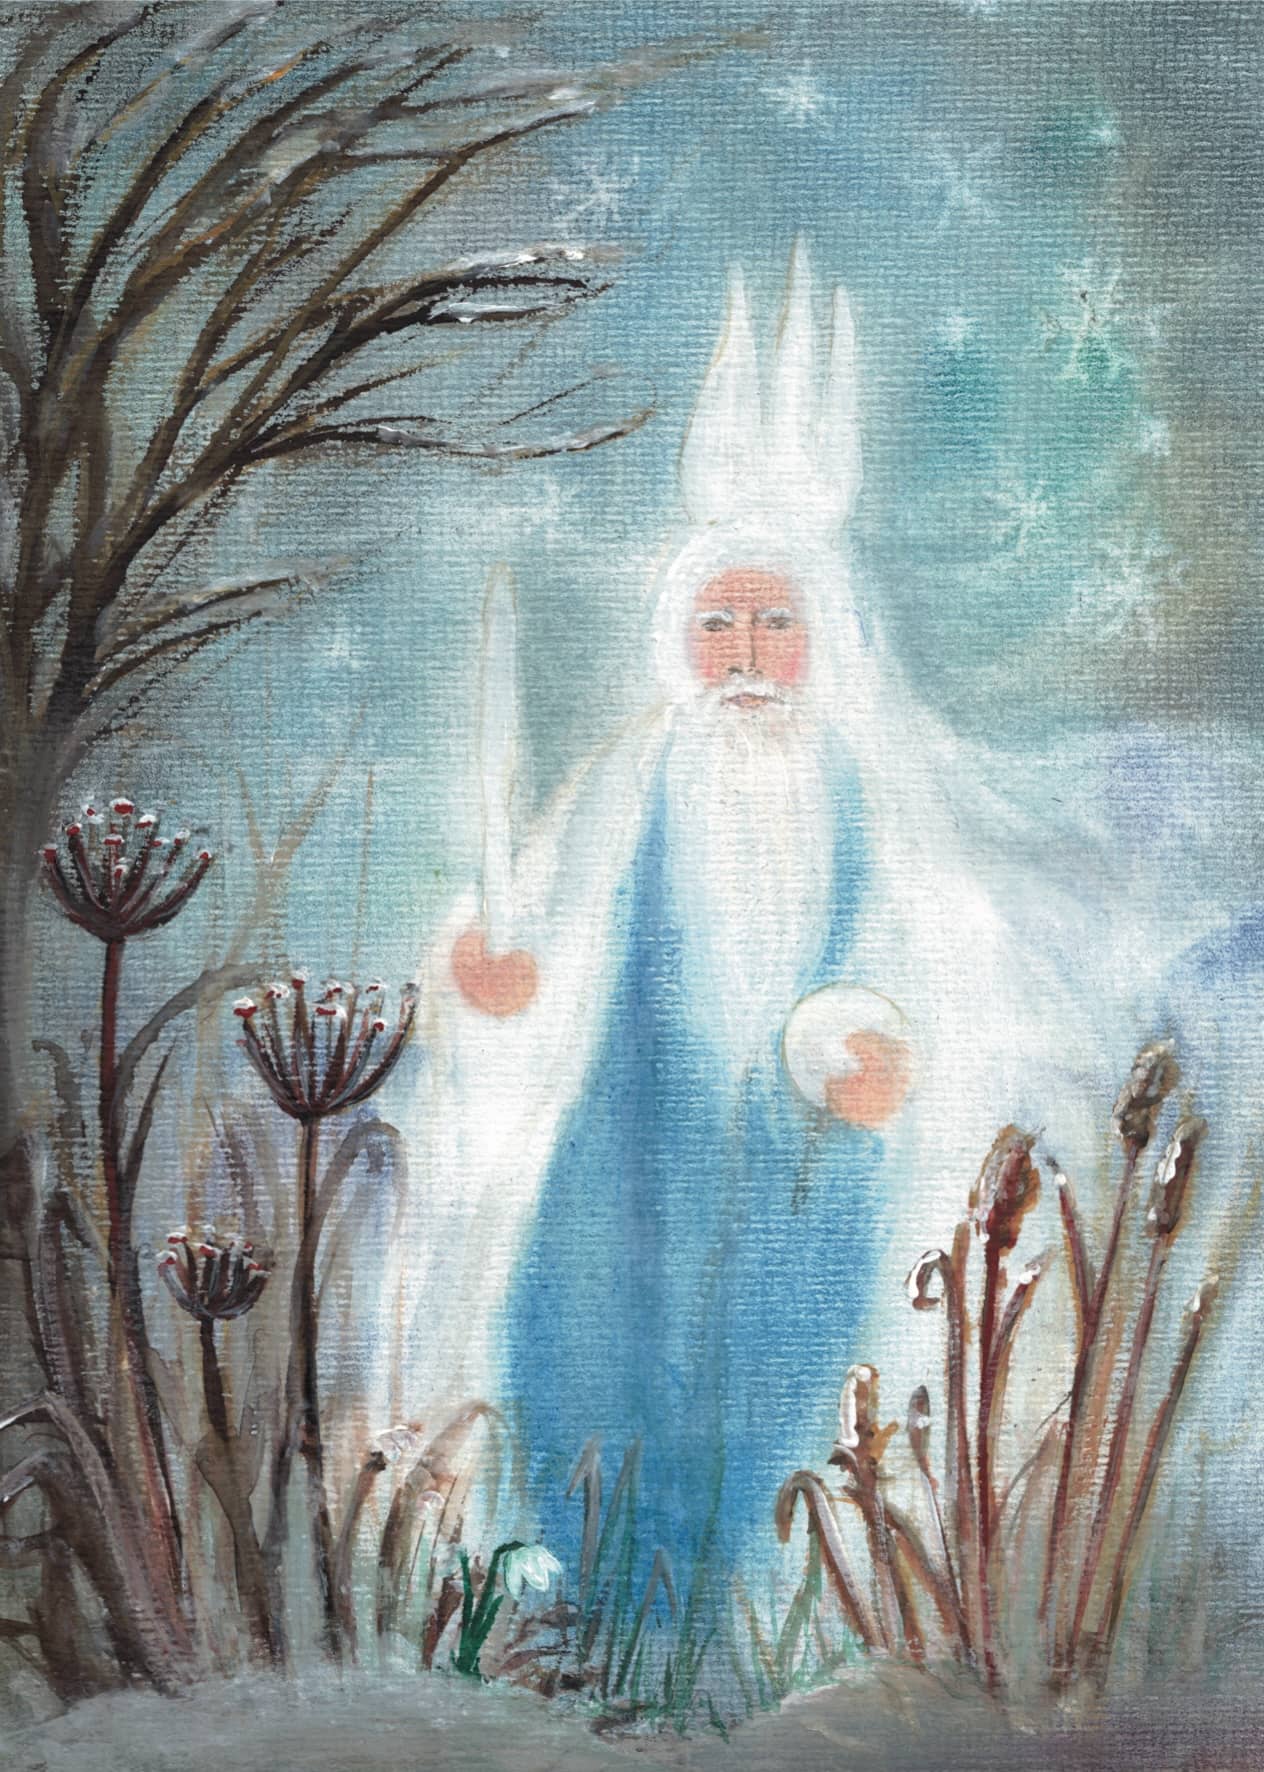 Seccorell-Postkarte "König Winter" zeigt eine mystische Figur, die die kalte Jahreszeit symbolisiert, umgeben von einer eisigen Landschaft.